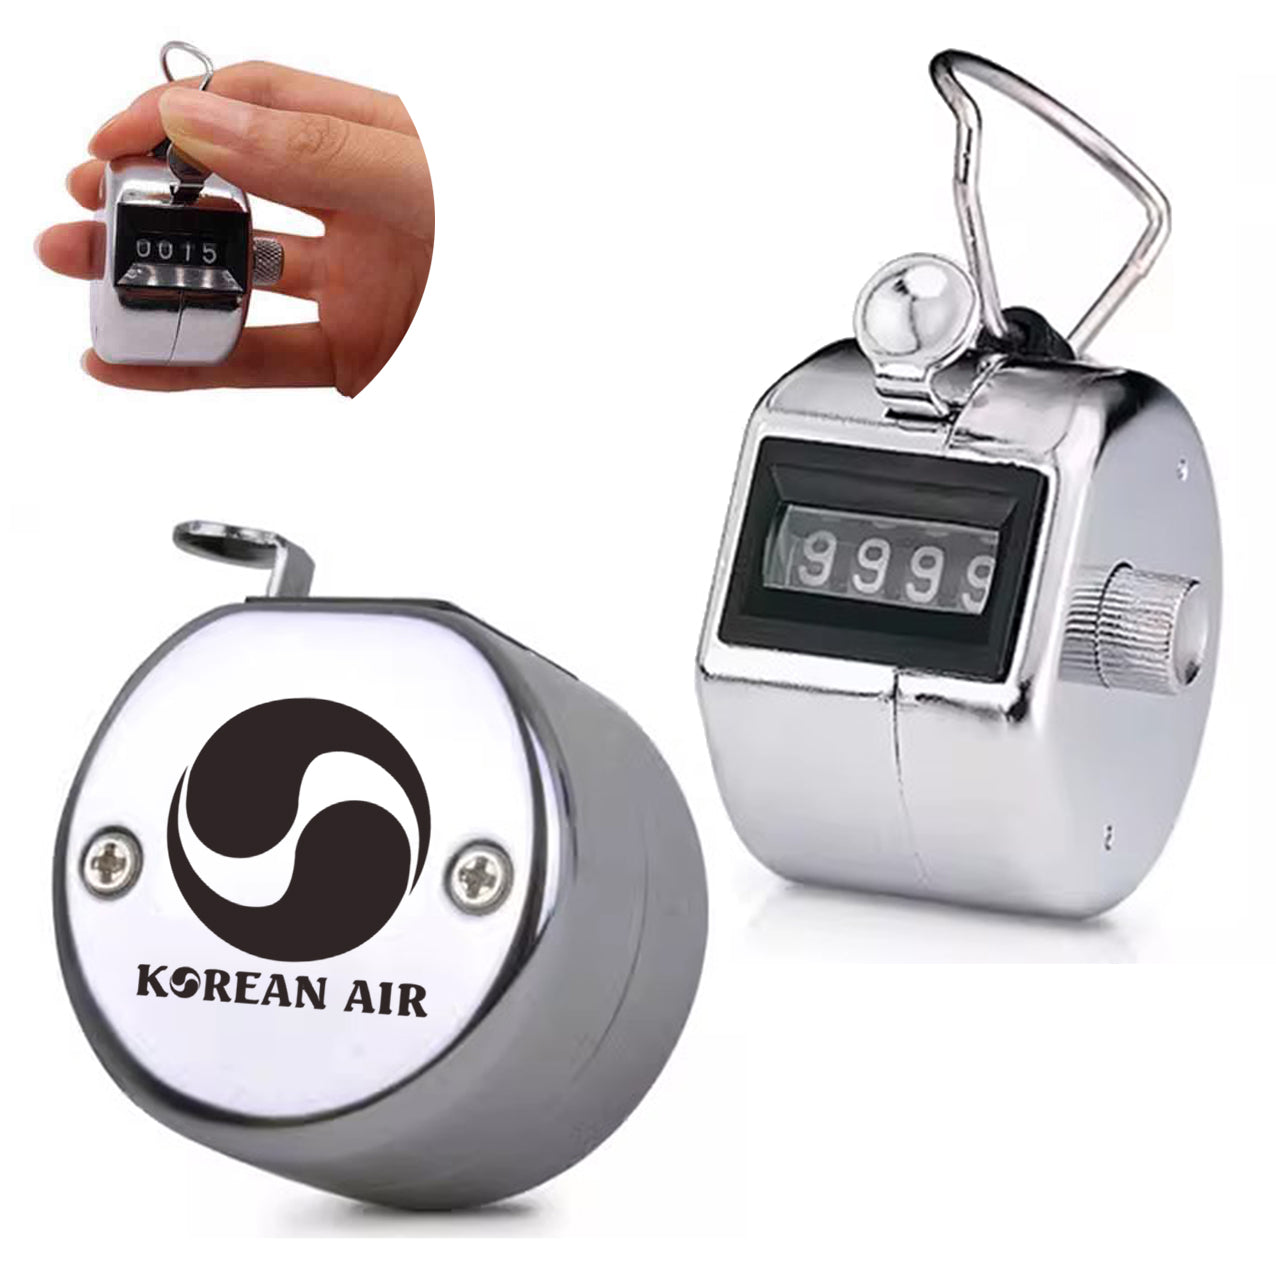 Korean Airlines Designed Metal Handheld Counters